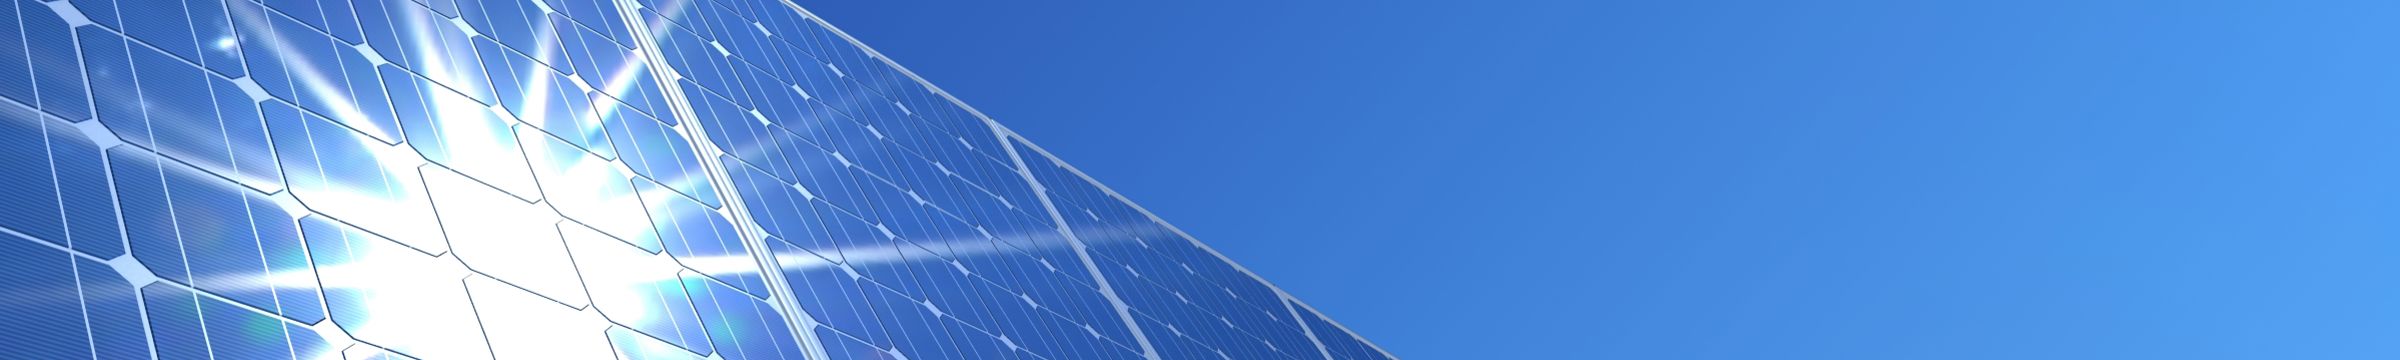 Solcellepaneler som gjenspeiler solstråler